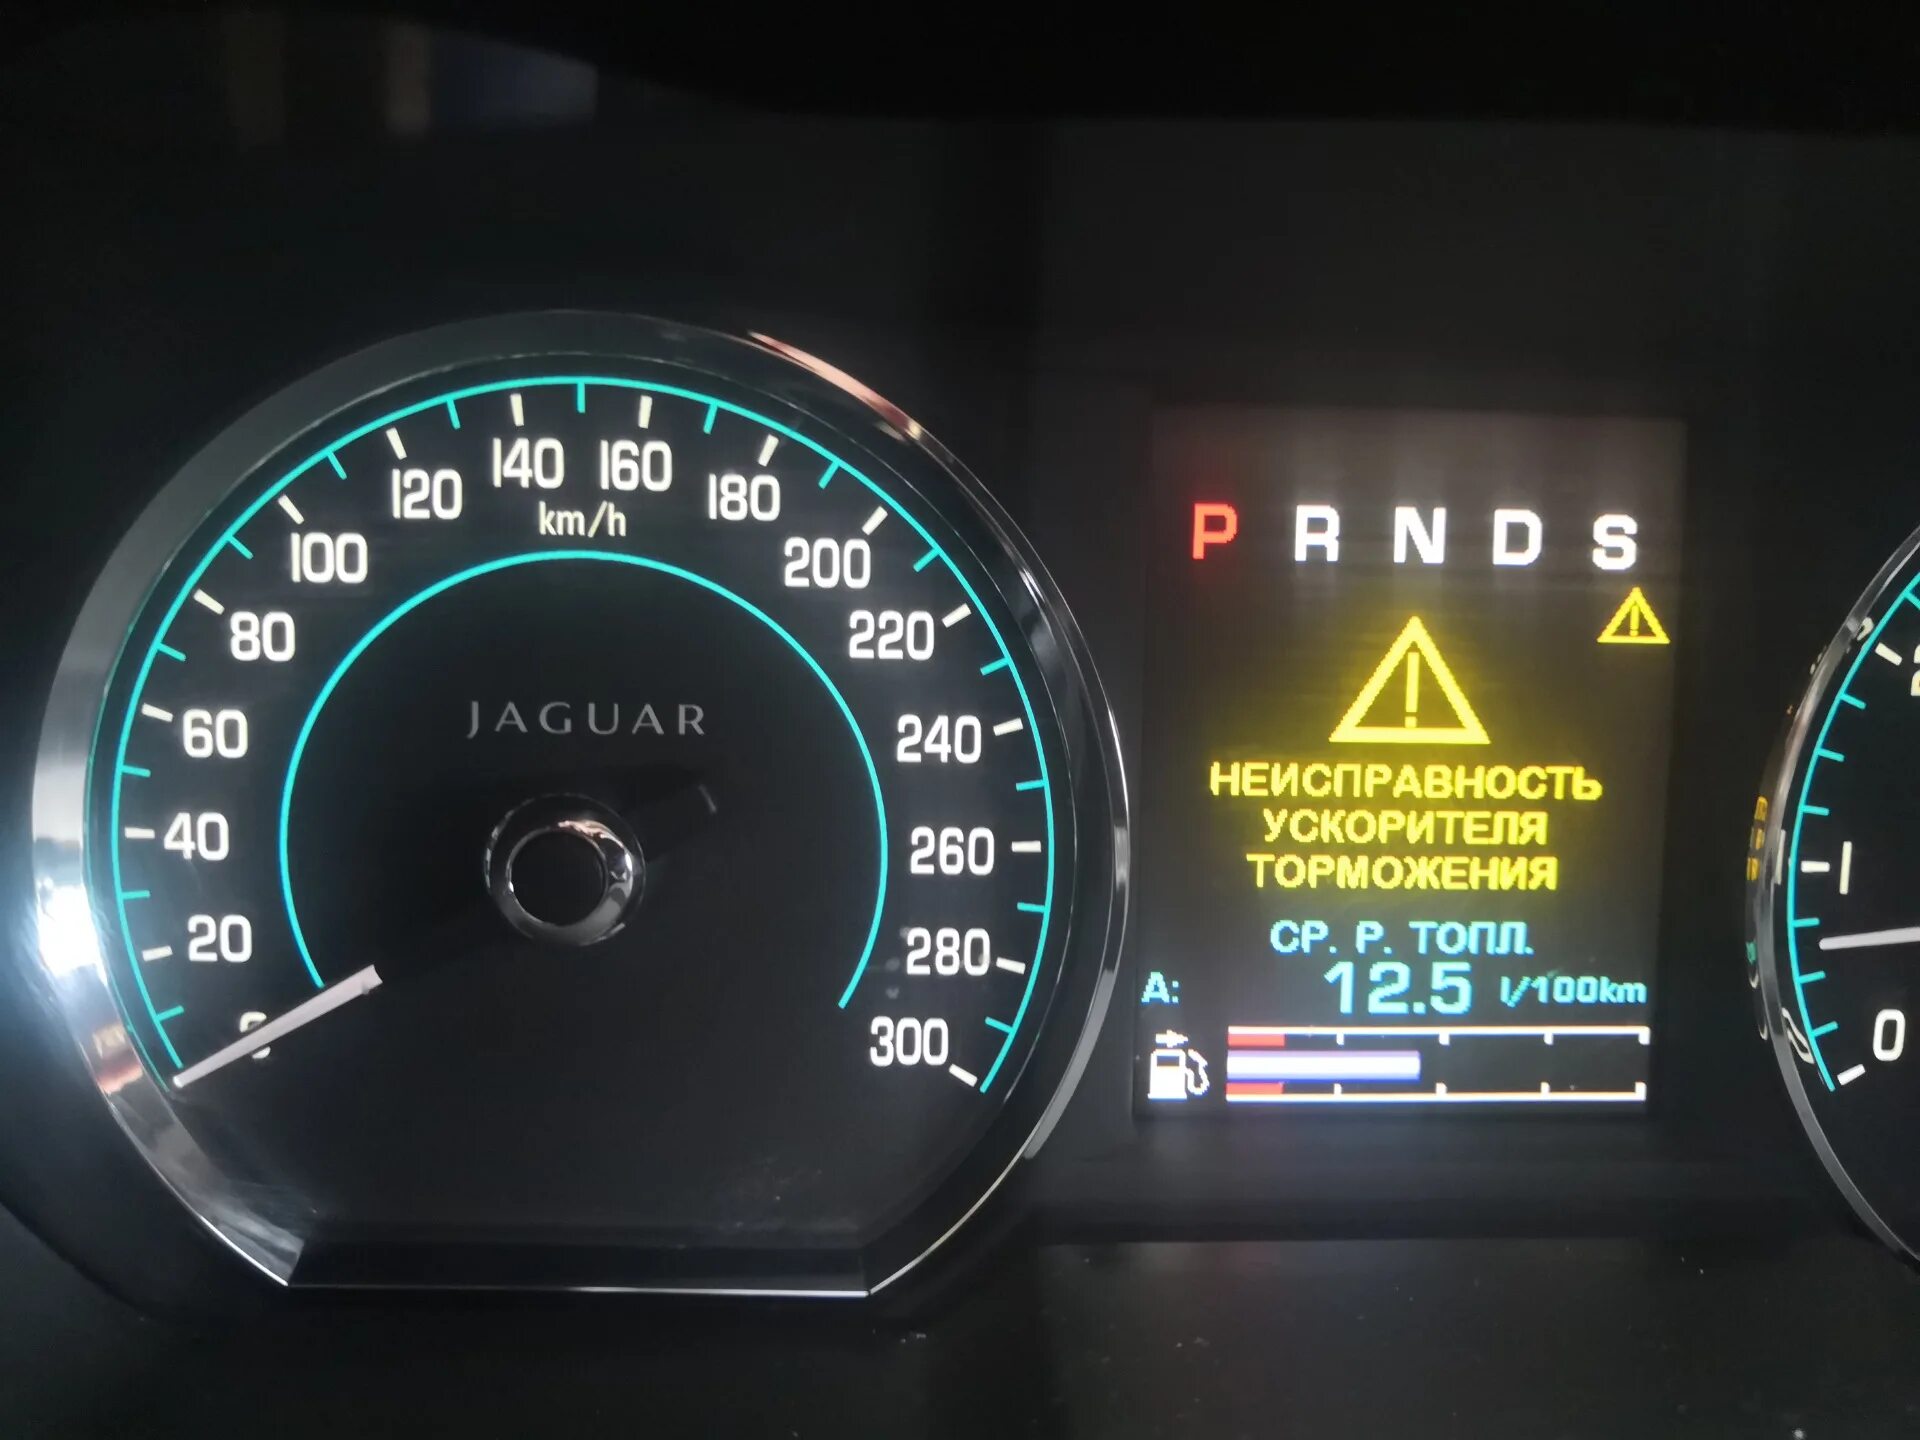 Ошибка не исправна. Jaguar XF неисправность коробки передач. Ошибка неисправности коробки передач Ягуар. Jaguar XF ошибки. Приборная панель Ягуар XF ошибки.